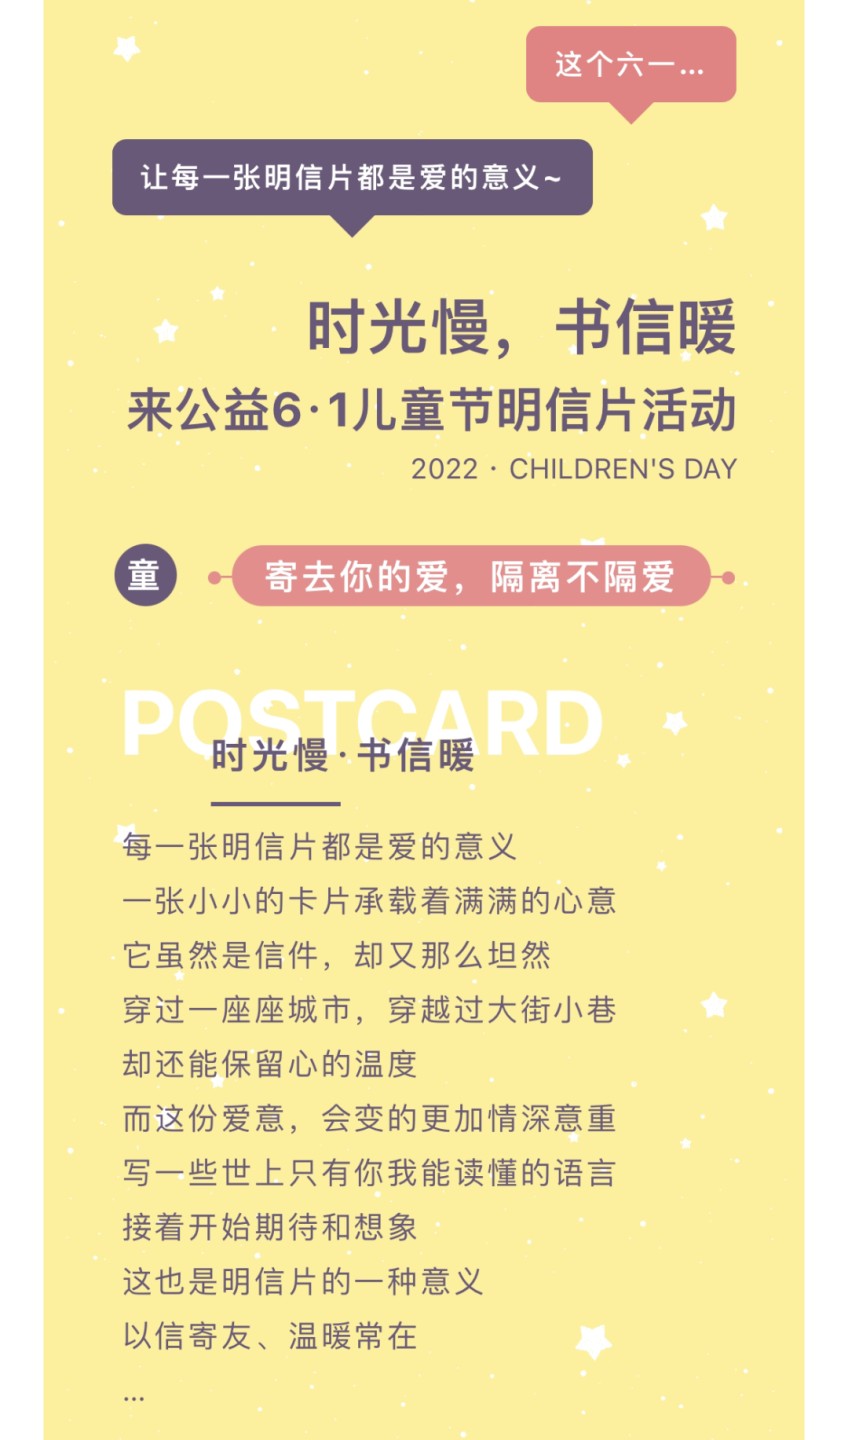 【稀奇活动】儿童节提供1张免费DIY明信片！【随日寄出】